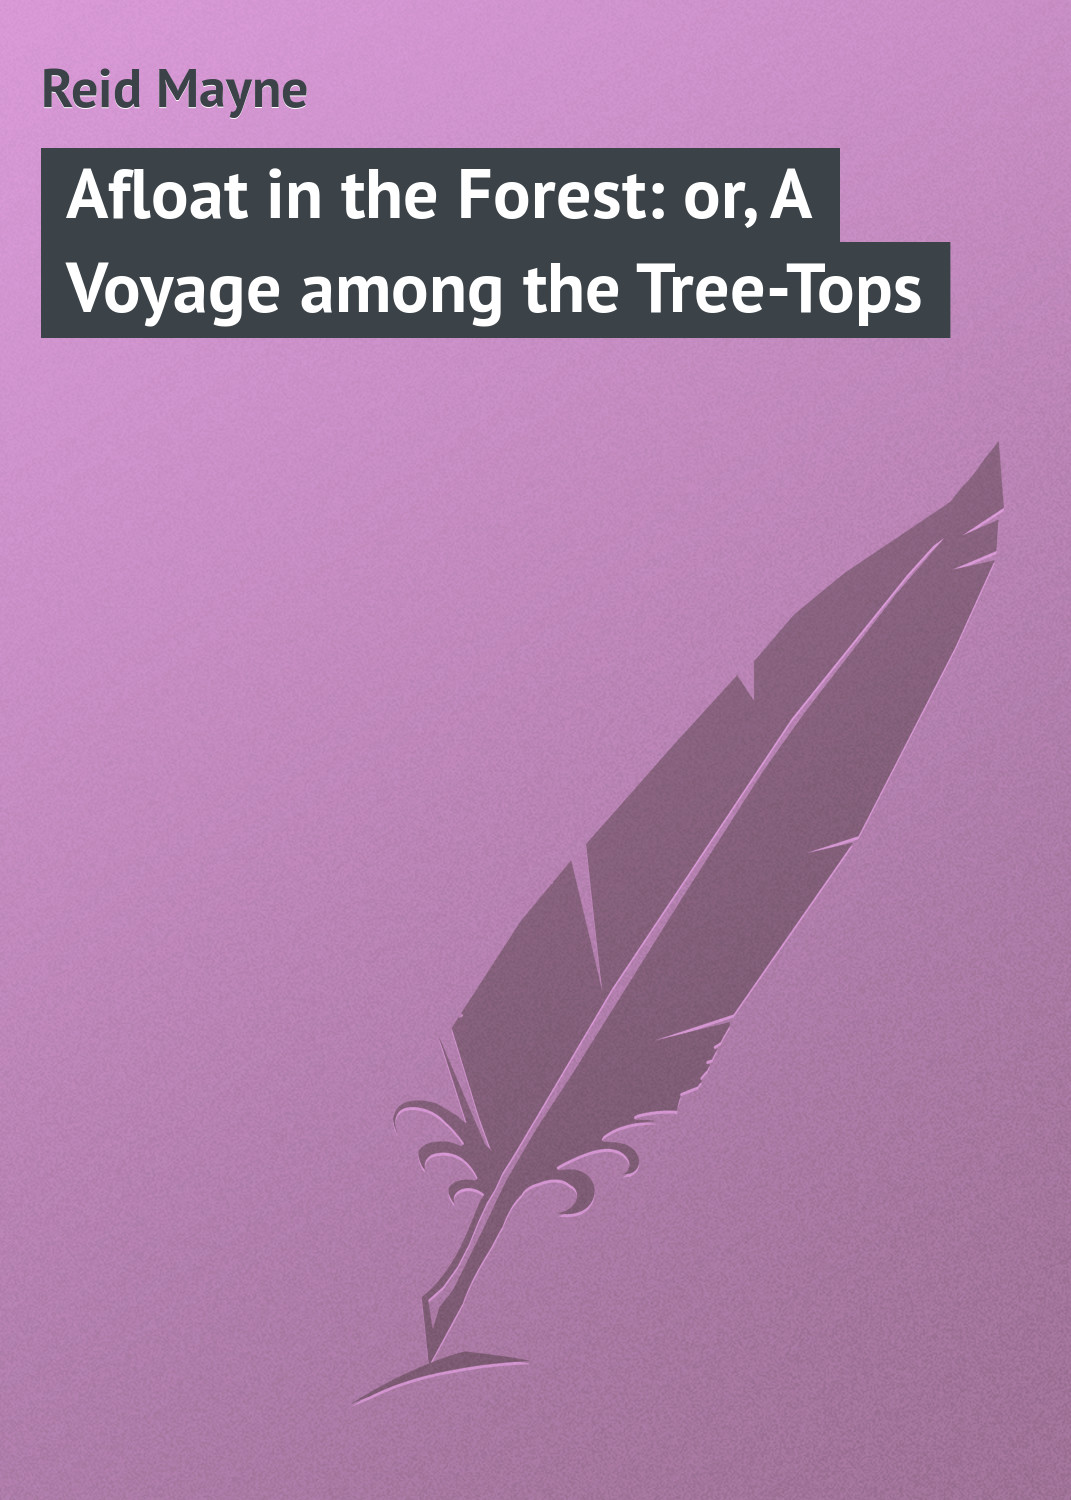 Книга Afloat in the Forest: or, A Voyage among the Tree-Tops из серии , созданная Mayne Reid, может относится к жанру Зарубежная классика, Зарубежные детские книги. Стоимость электронной книги Afloat in the Forest: or, A Voyage among the Tree-Tops с идентификатором 23147731 составляет 5.99 руб.